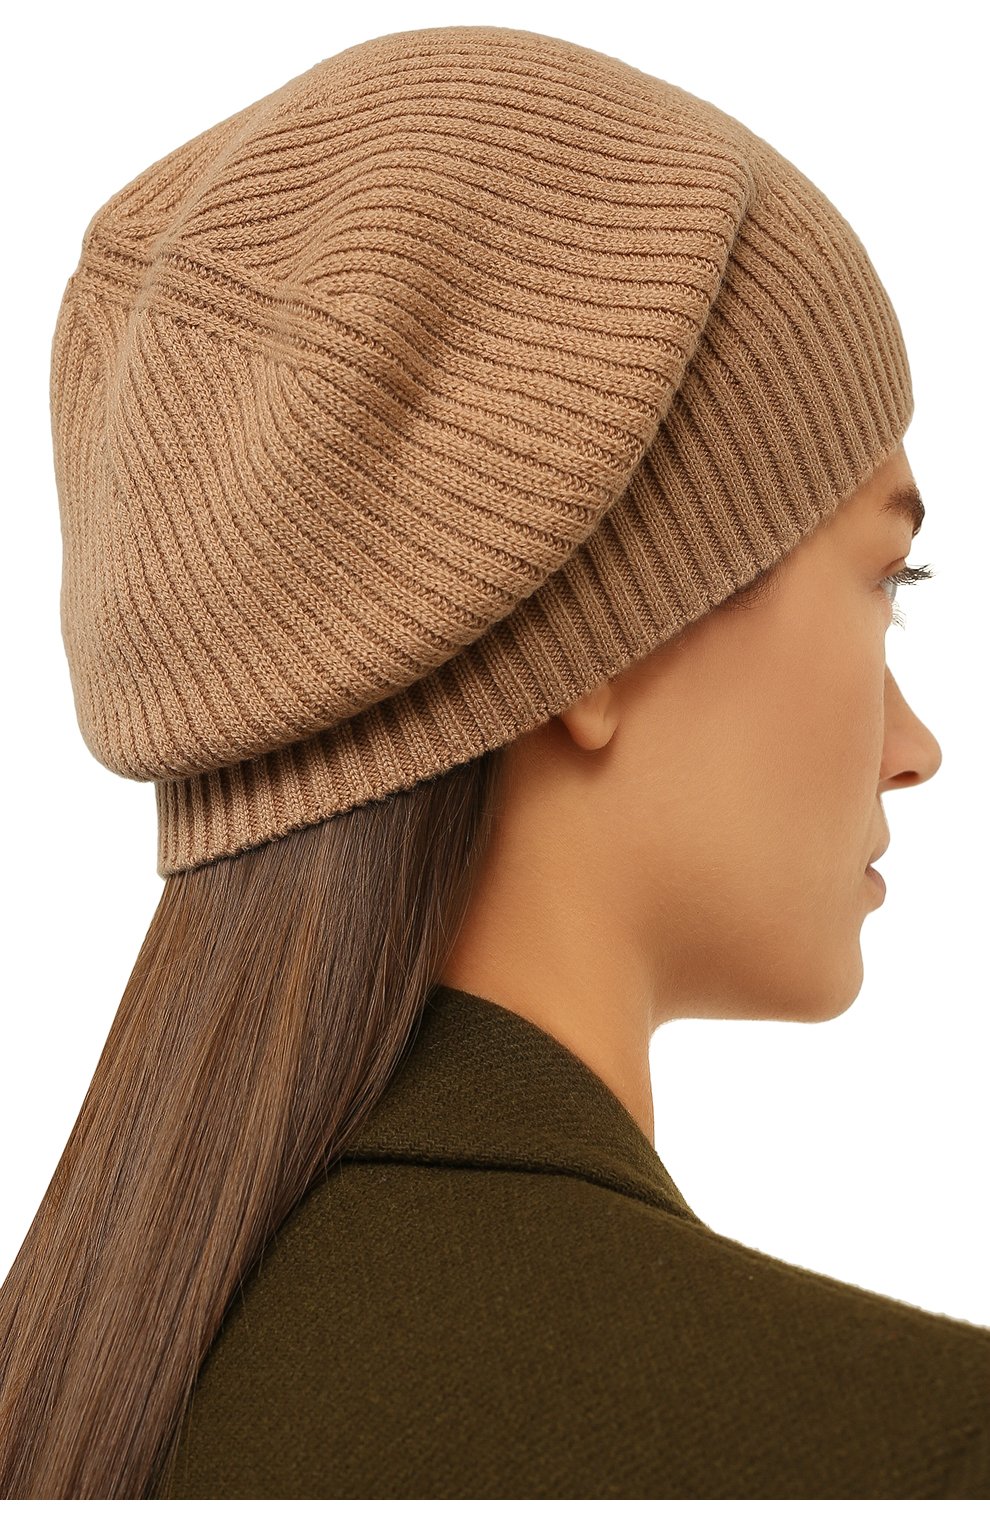 Женская шапка из шерсти и шелка ANTONELLI FIRENZE коричневого цвета, арт. VERMEER/40689A-01934 | Фото 2 (Матер иал: Текстиль, Шерсть)